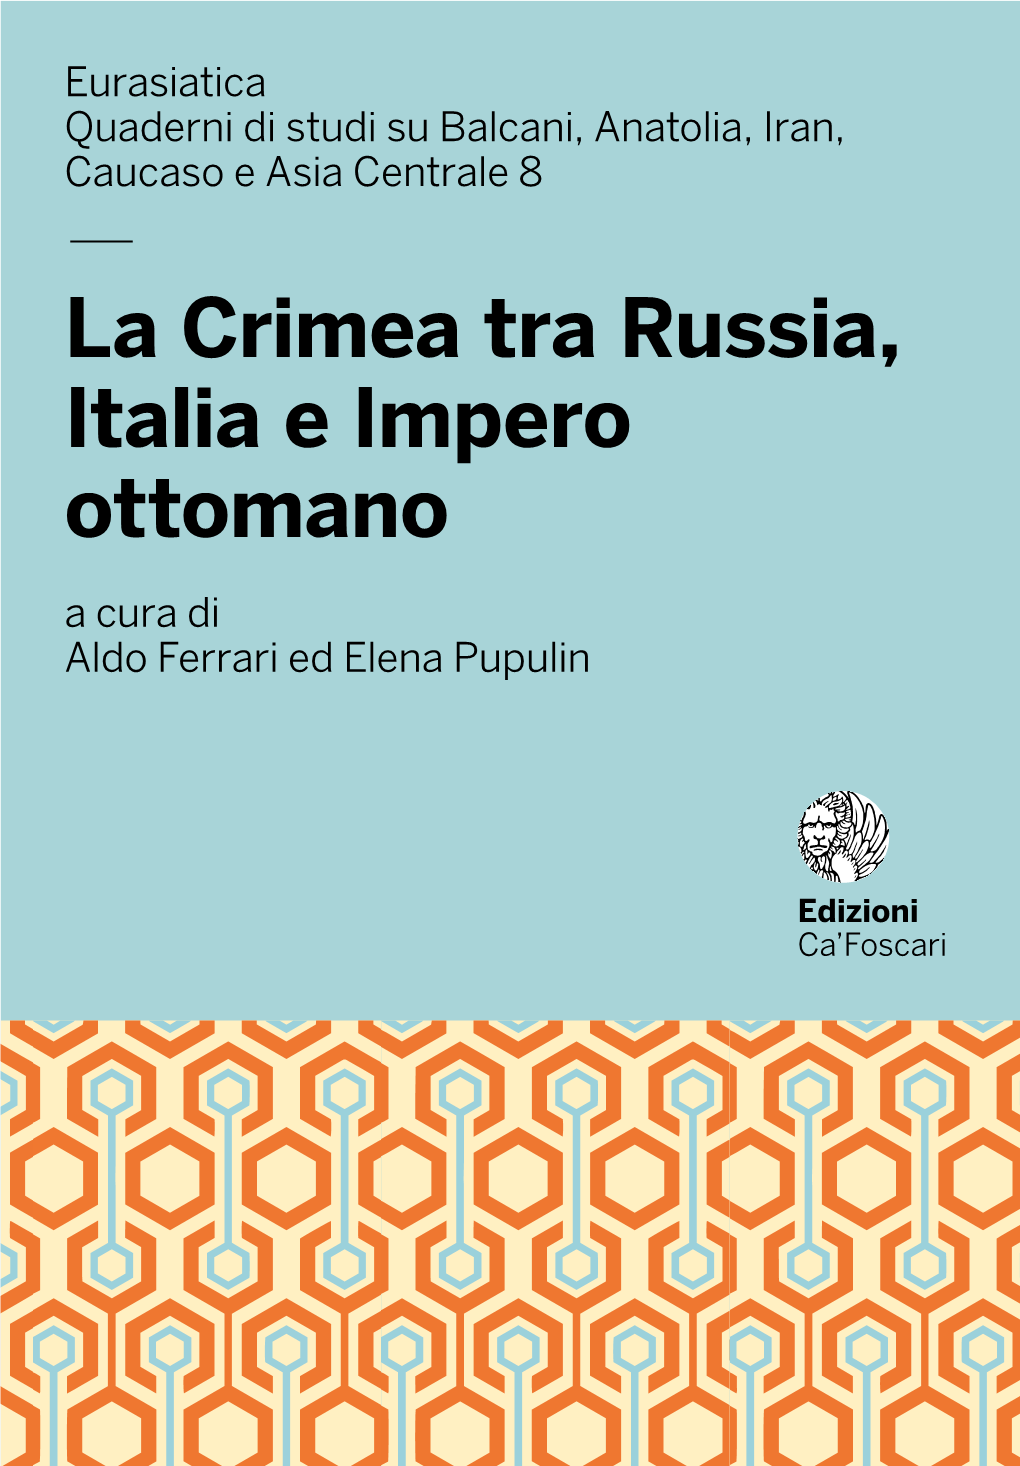 — La Crimea Tra Russia, Italia E Impero Ottomano